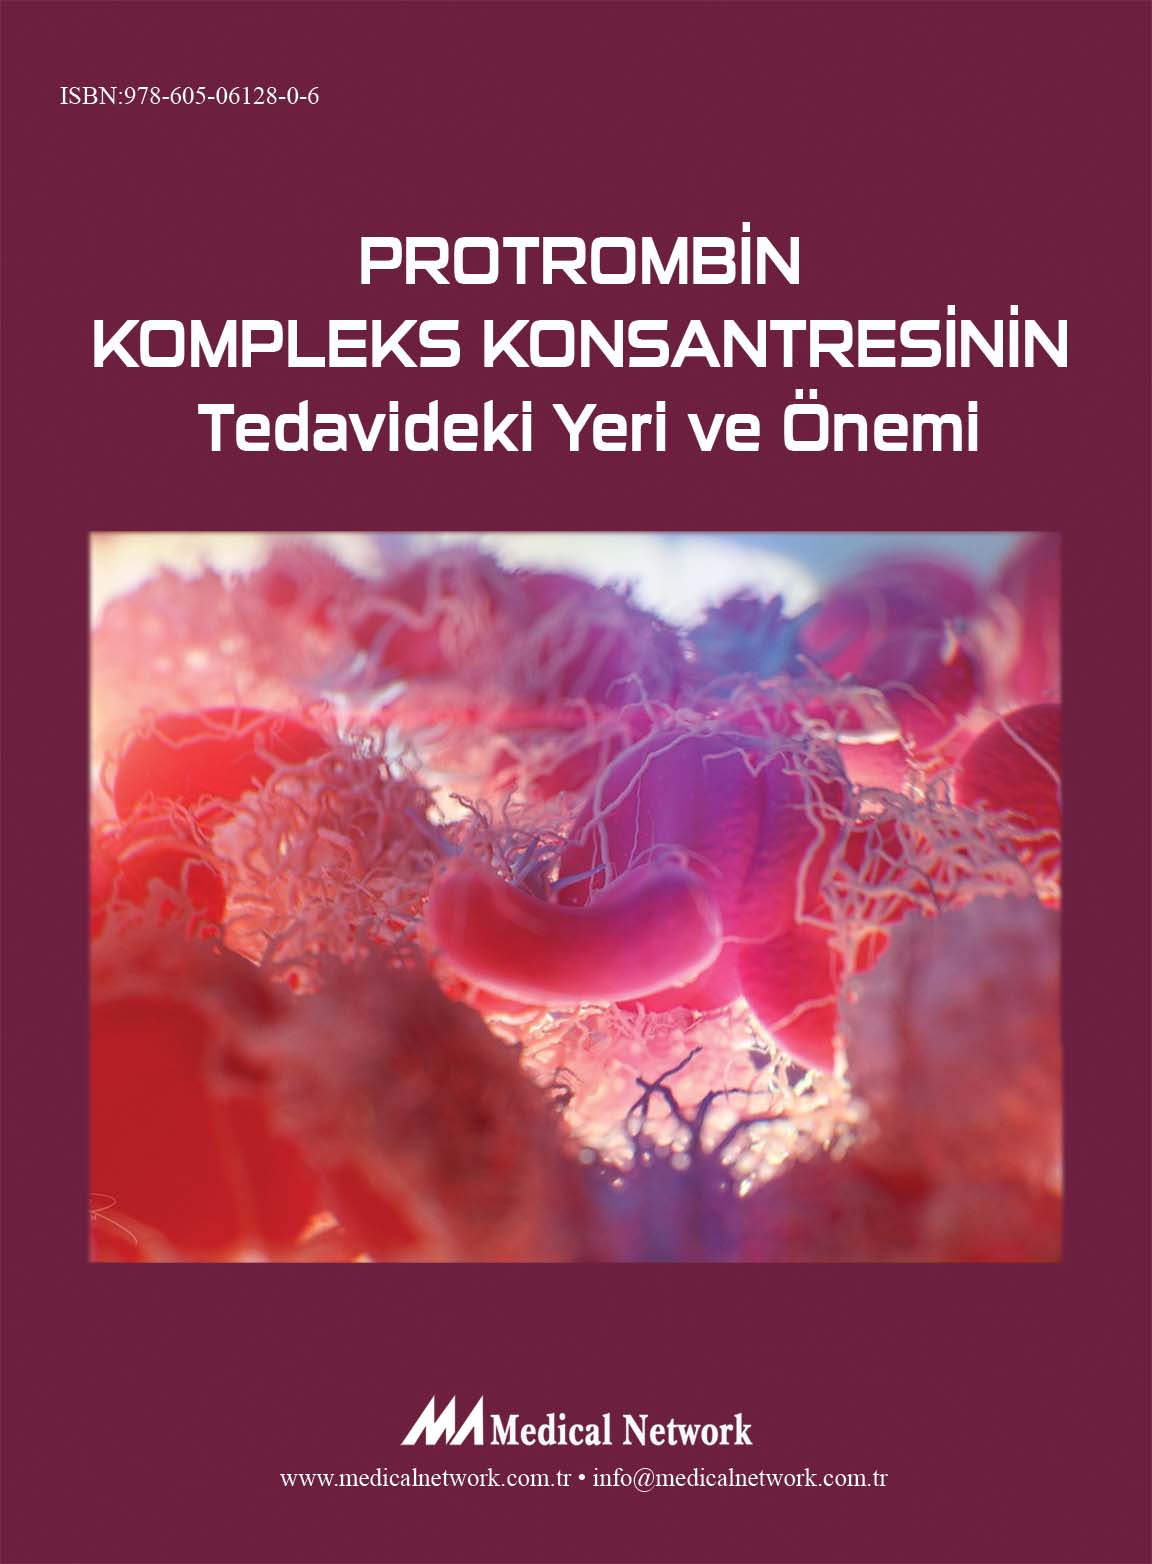 Protrombin Kompleks Konsantresinin Tedavideki Yeri ve Önemi